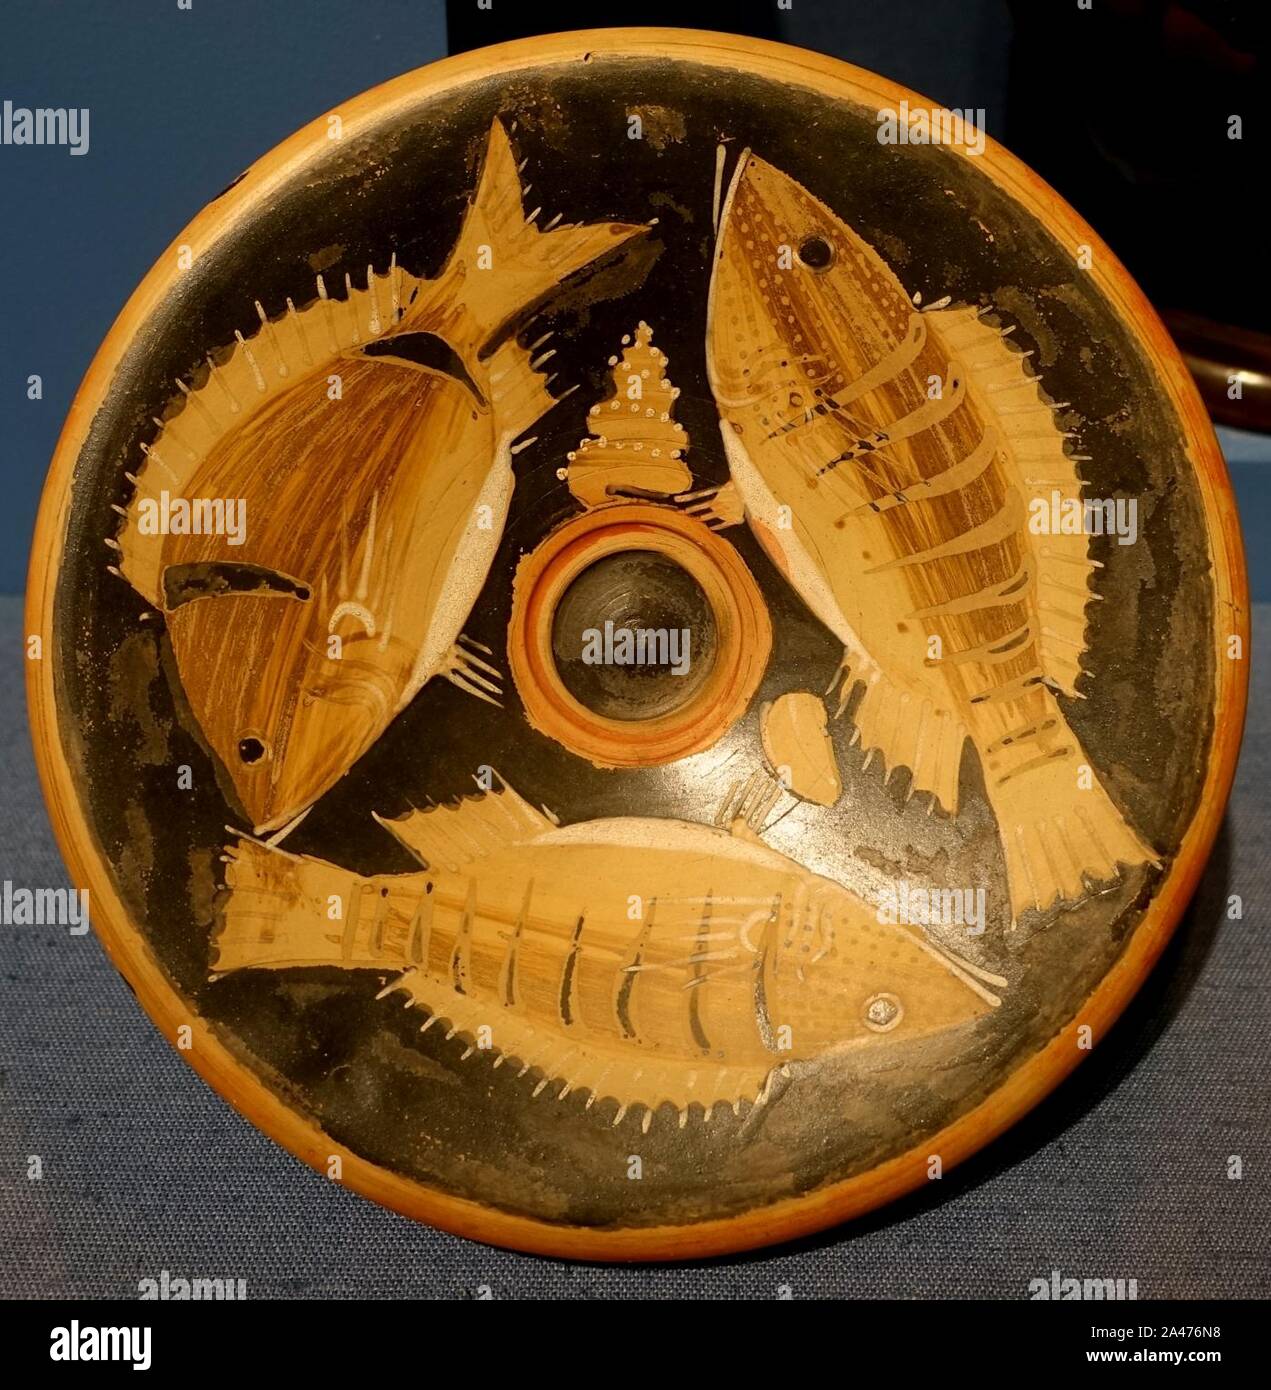 Fisch Platte, der Kampanischen Griechen, 299-200 v. Chr., bemalter Terrakotta, Rot - Abbildung Technik - Stockfoto